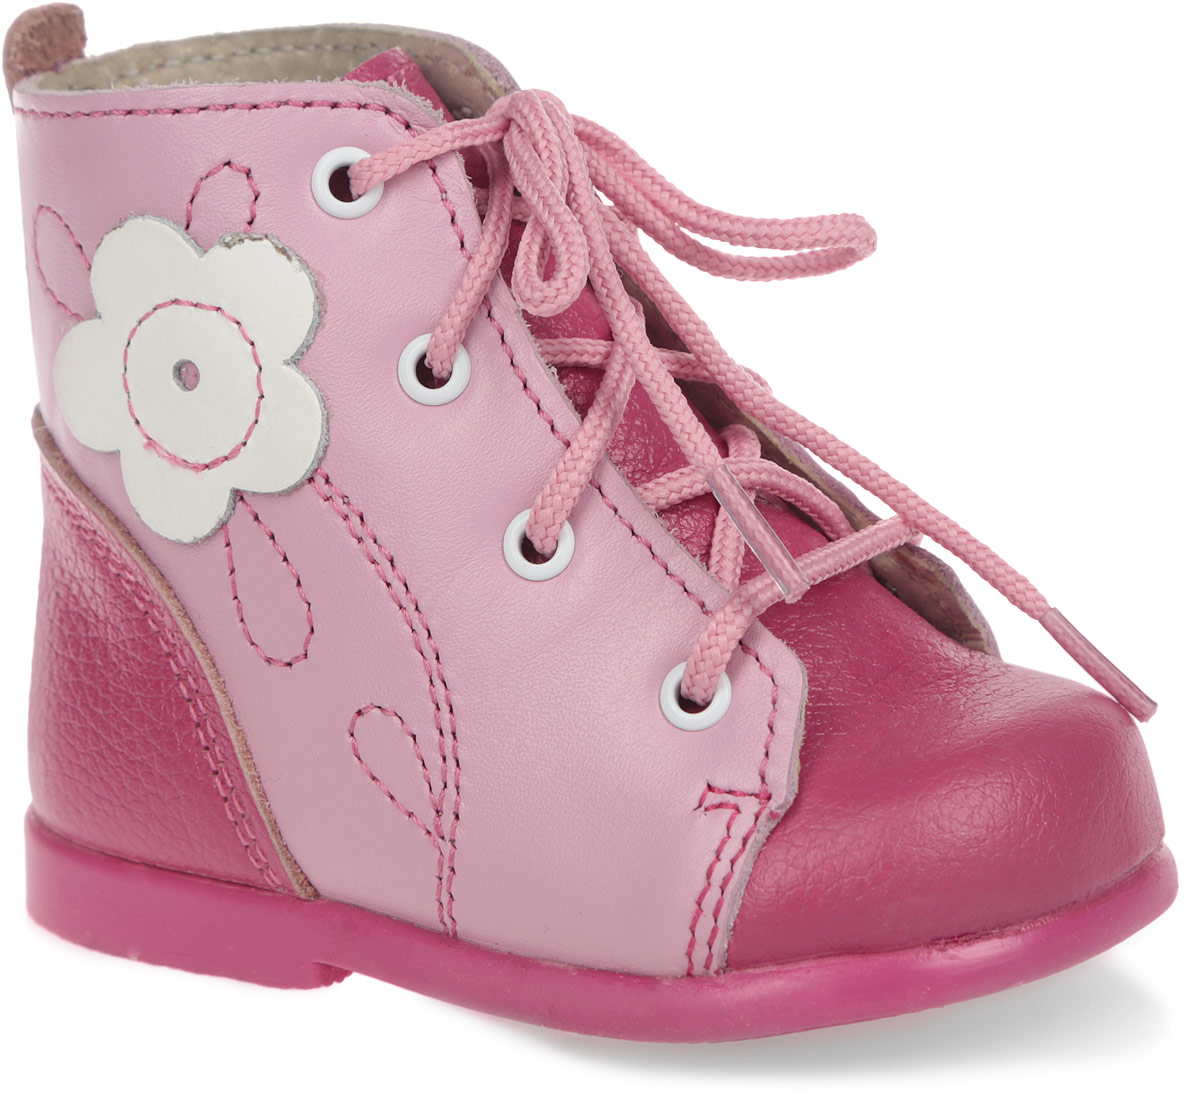 Ботинки для девочки Скороход, цвет: фуксия, розовый. 13-137-3. Размер 20. Длина стельки 12,5 см